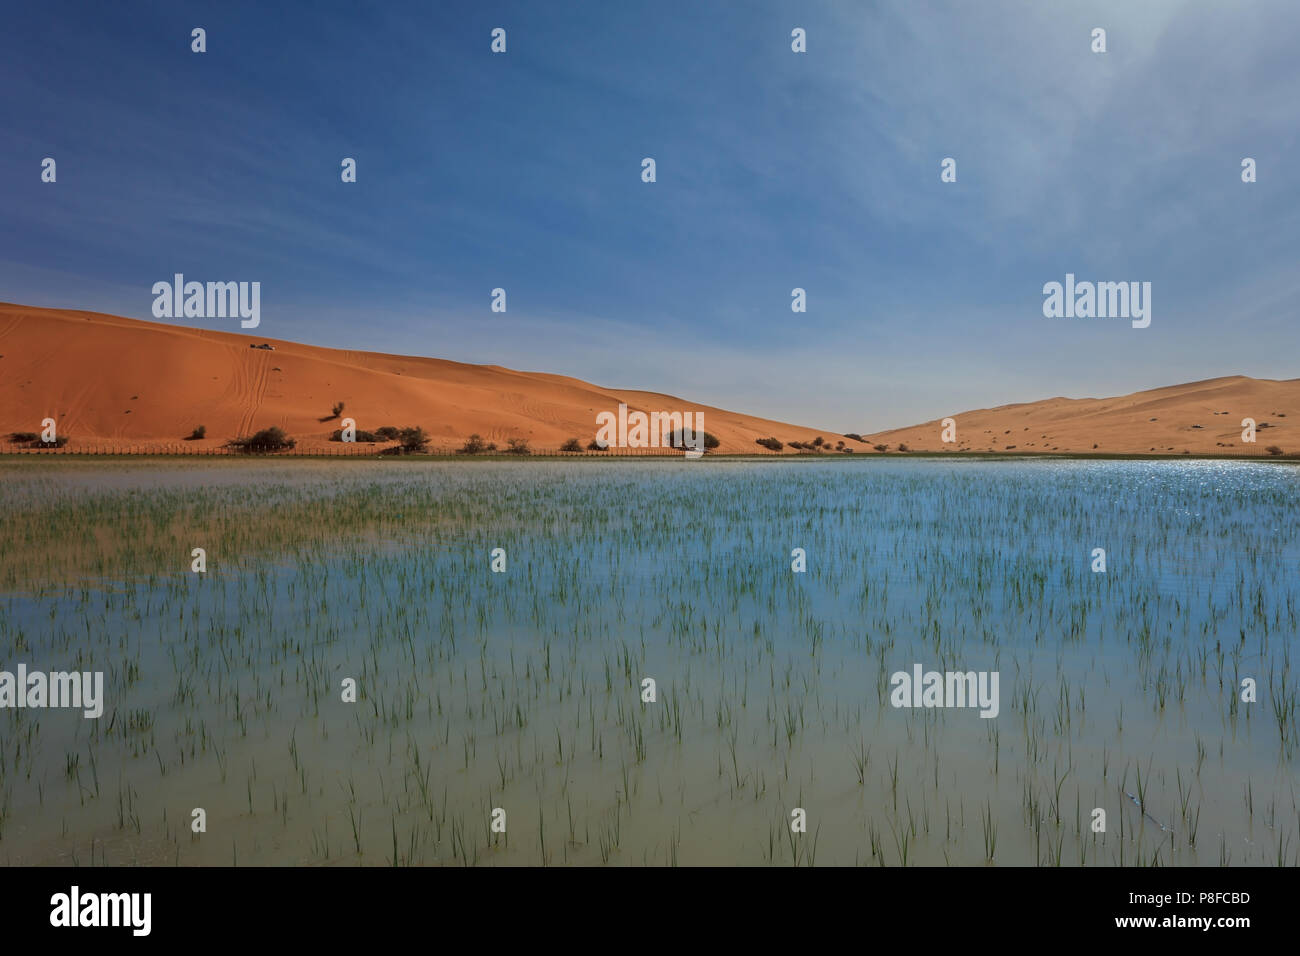 Paysage désertique après les pluies, l'Arabie Saoudite Banque D'Images